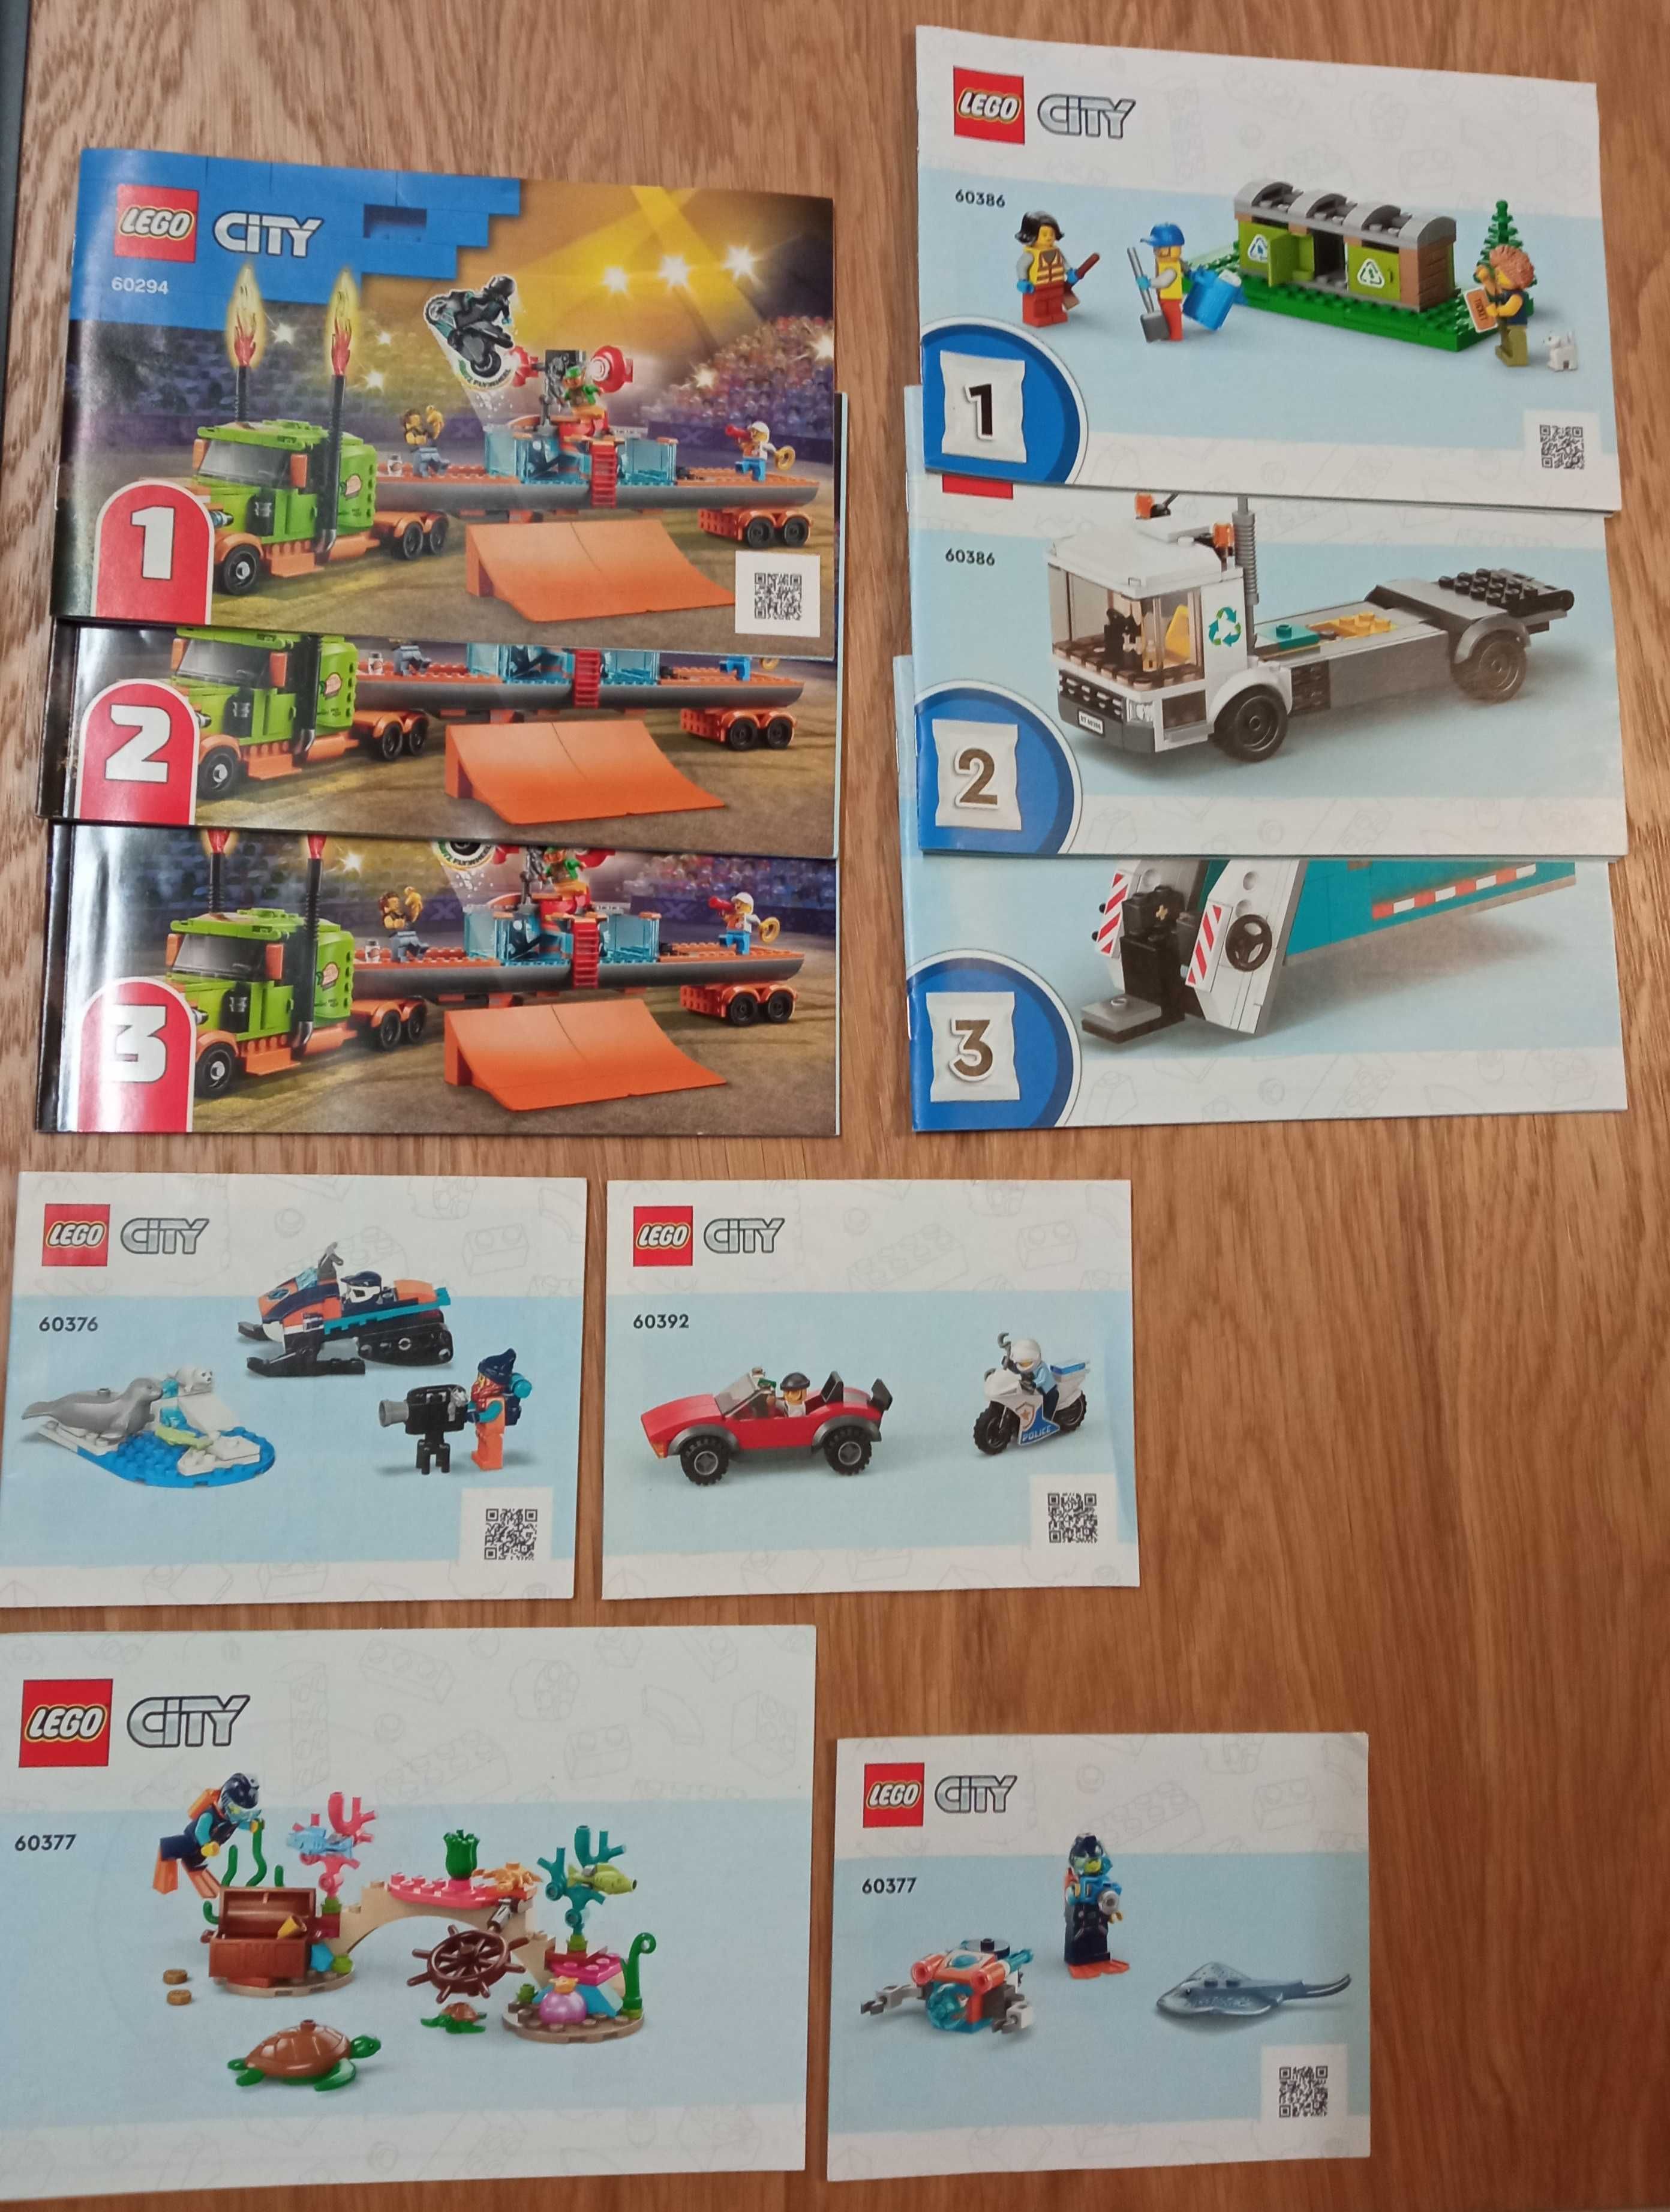 Instrukcje Lego City:  60294, 60386, 60376, 60392, 60377